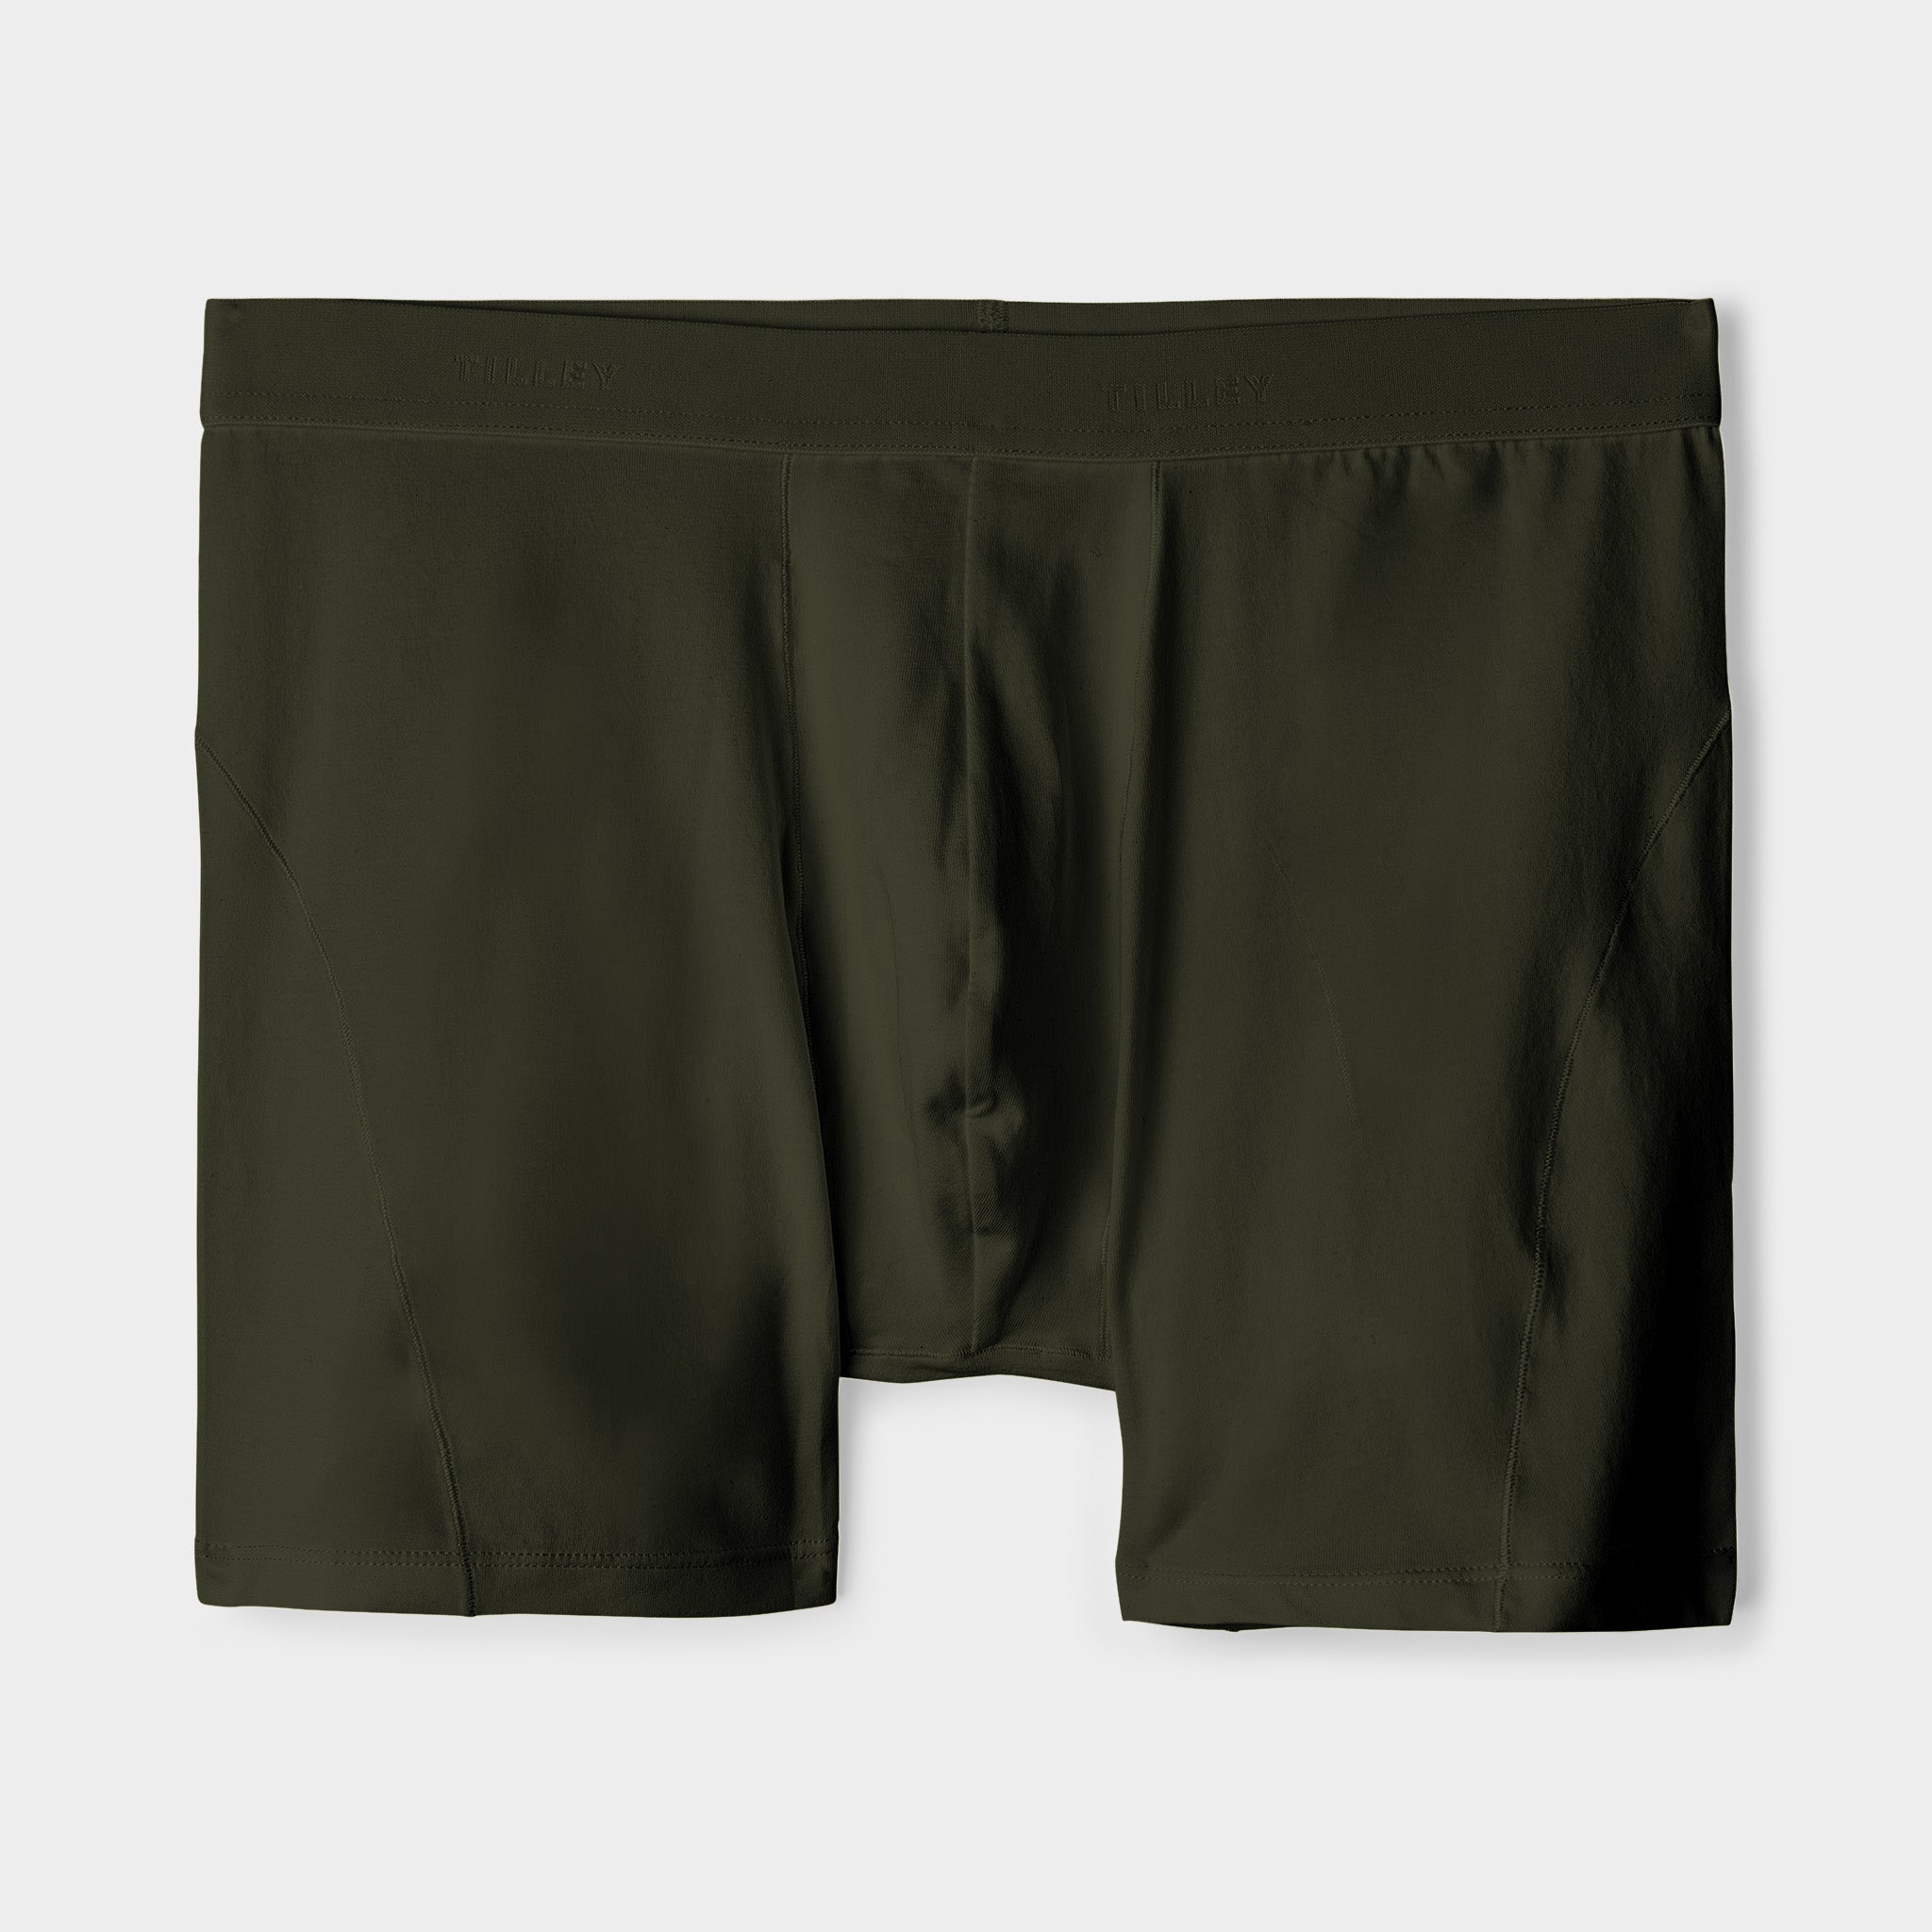 Organic cotton boxer brief - men underwear - basic black